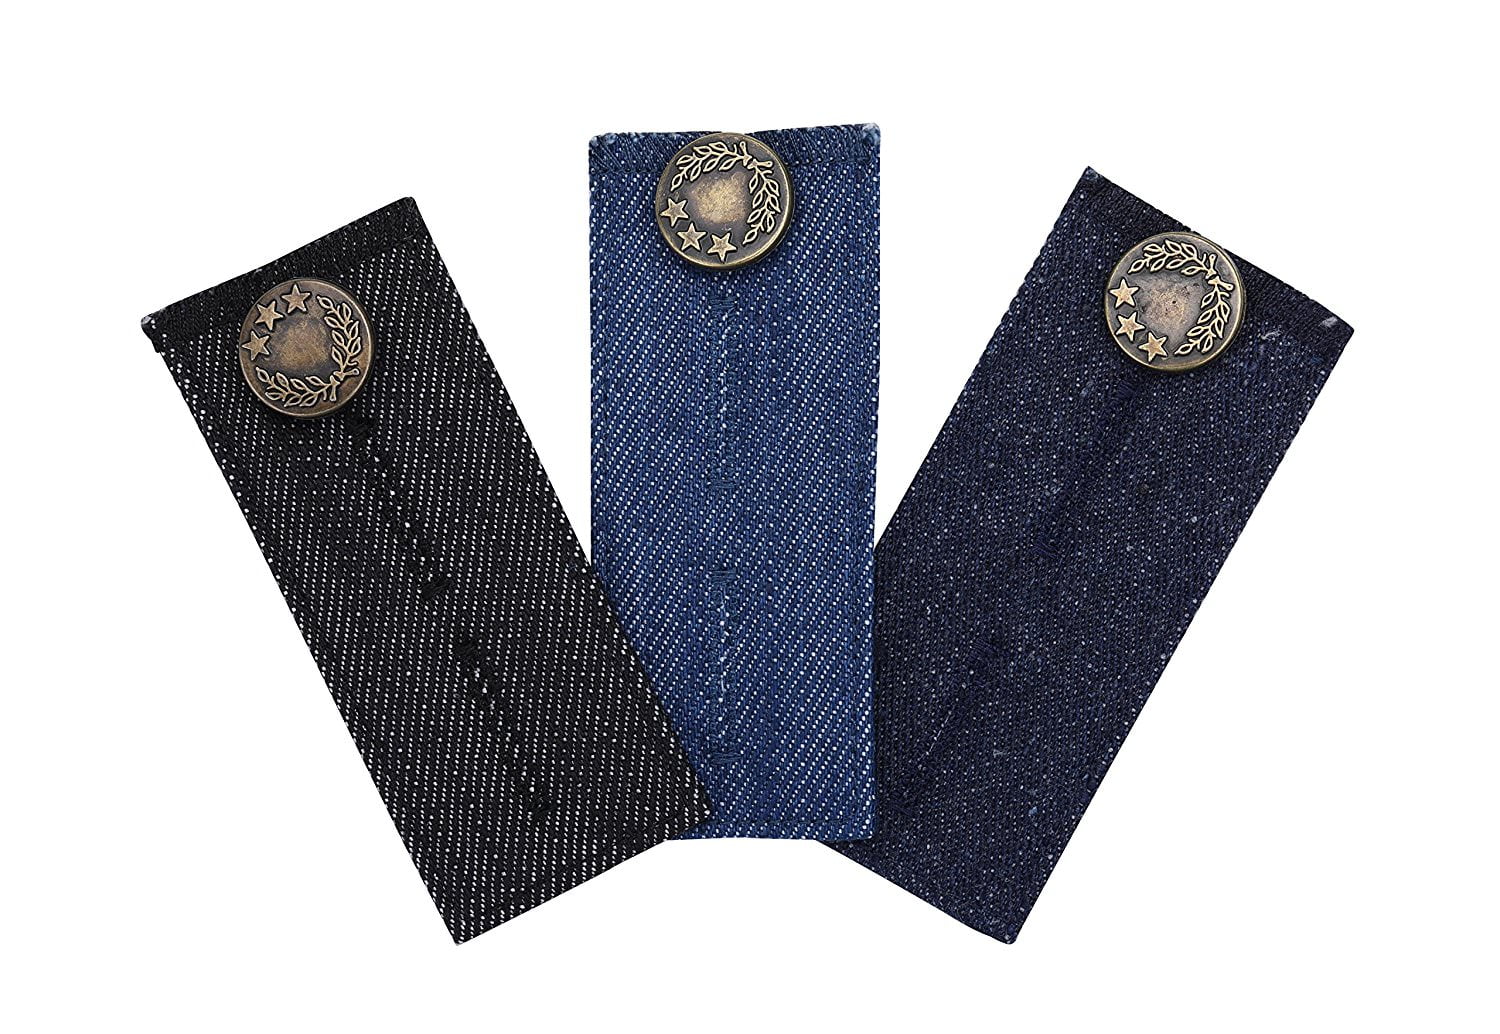 ZEFFFKA Denim Waist Extender Button for Jeans and Skirt Comfy Metal Buttons 4 Pcs Assorted Colors